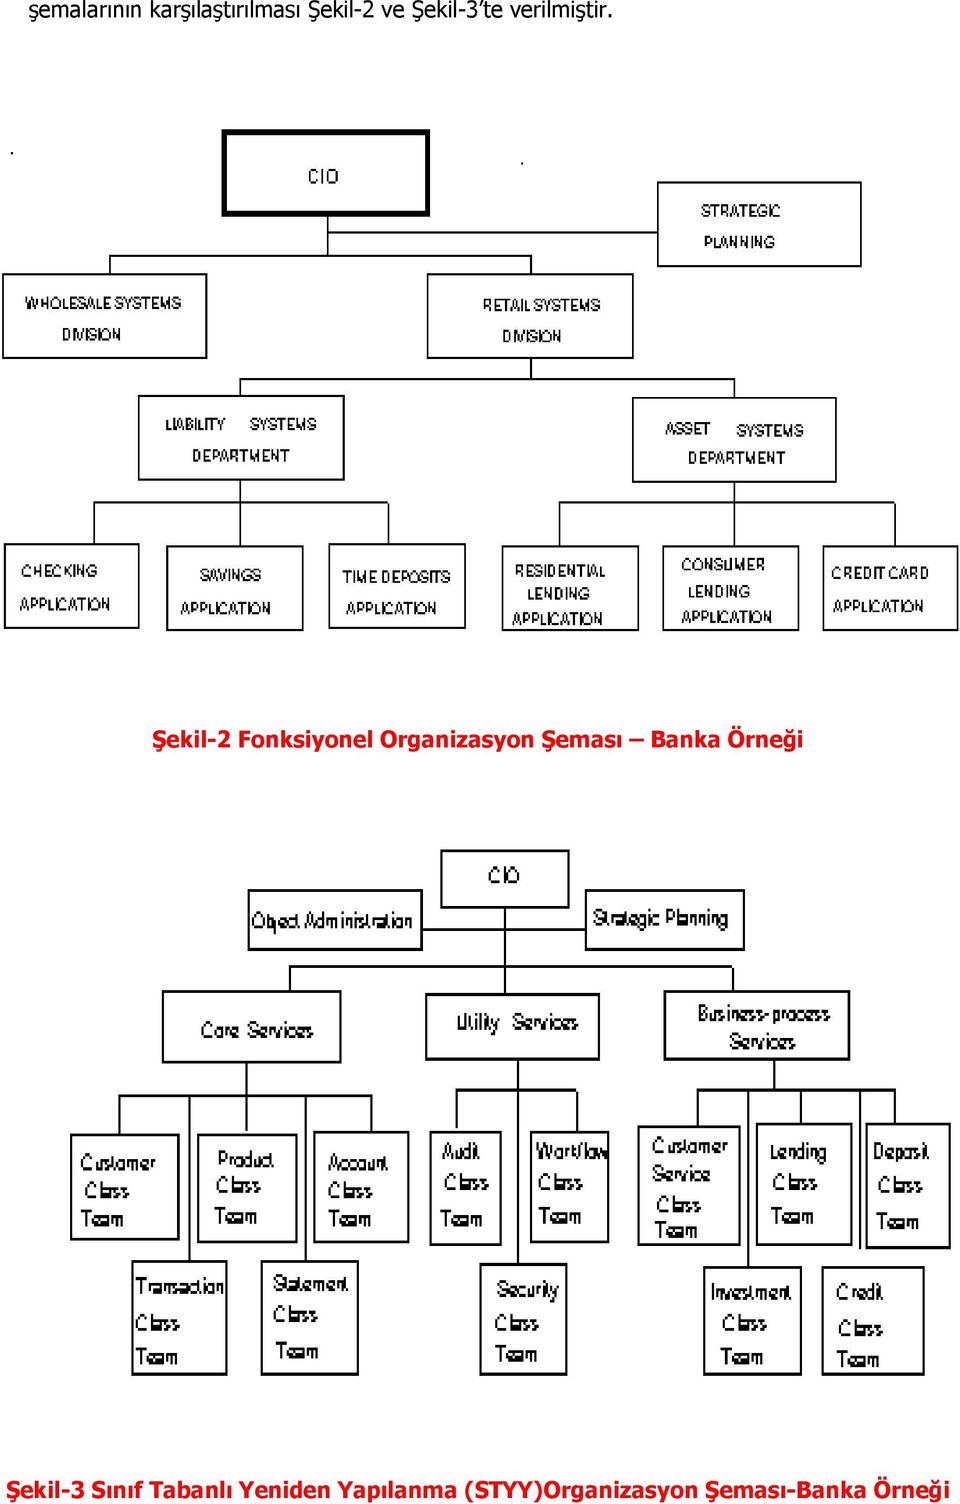 Şekil-2 Fonksiyonel Organizasyon Şeması Banka